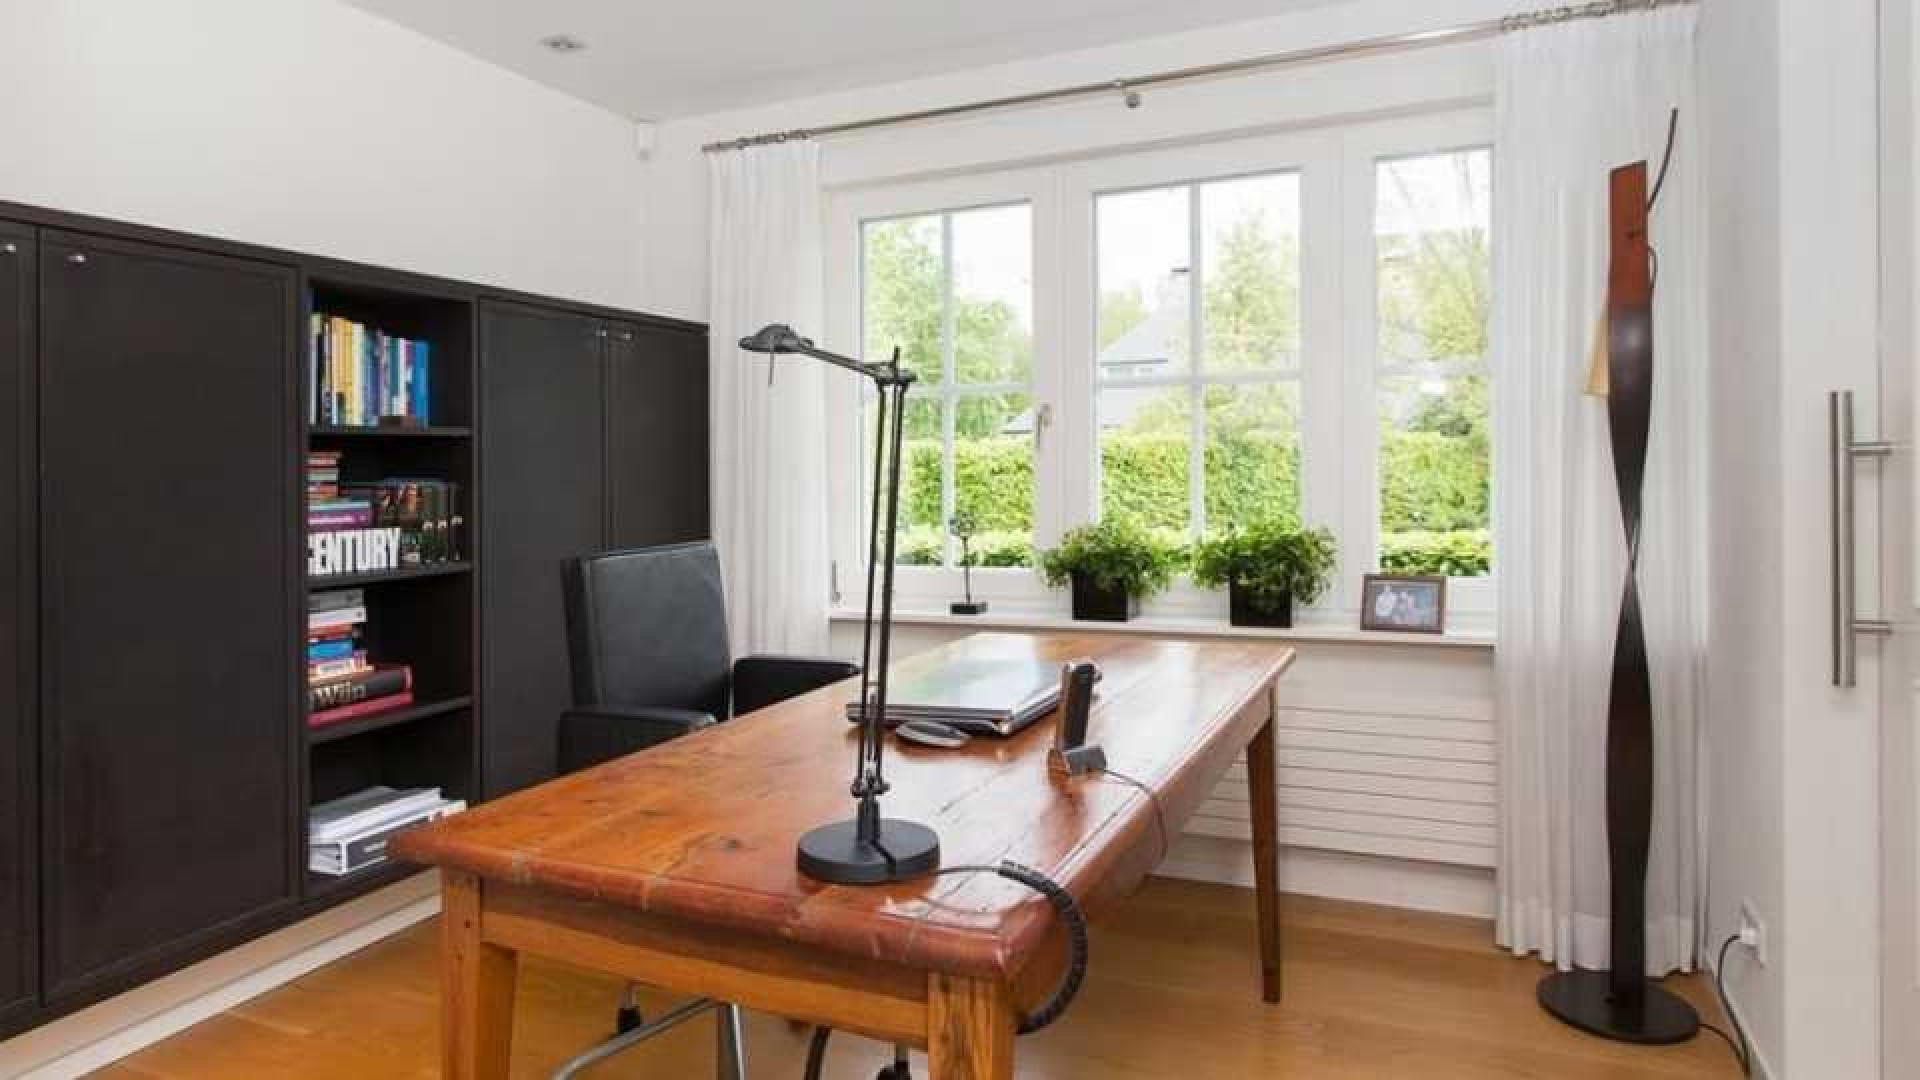 Oud premier Jan Peter Balkenende koopt cash miljoenenvilla. Zie foto's 9